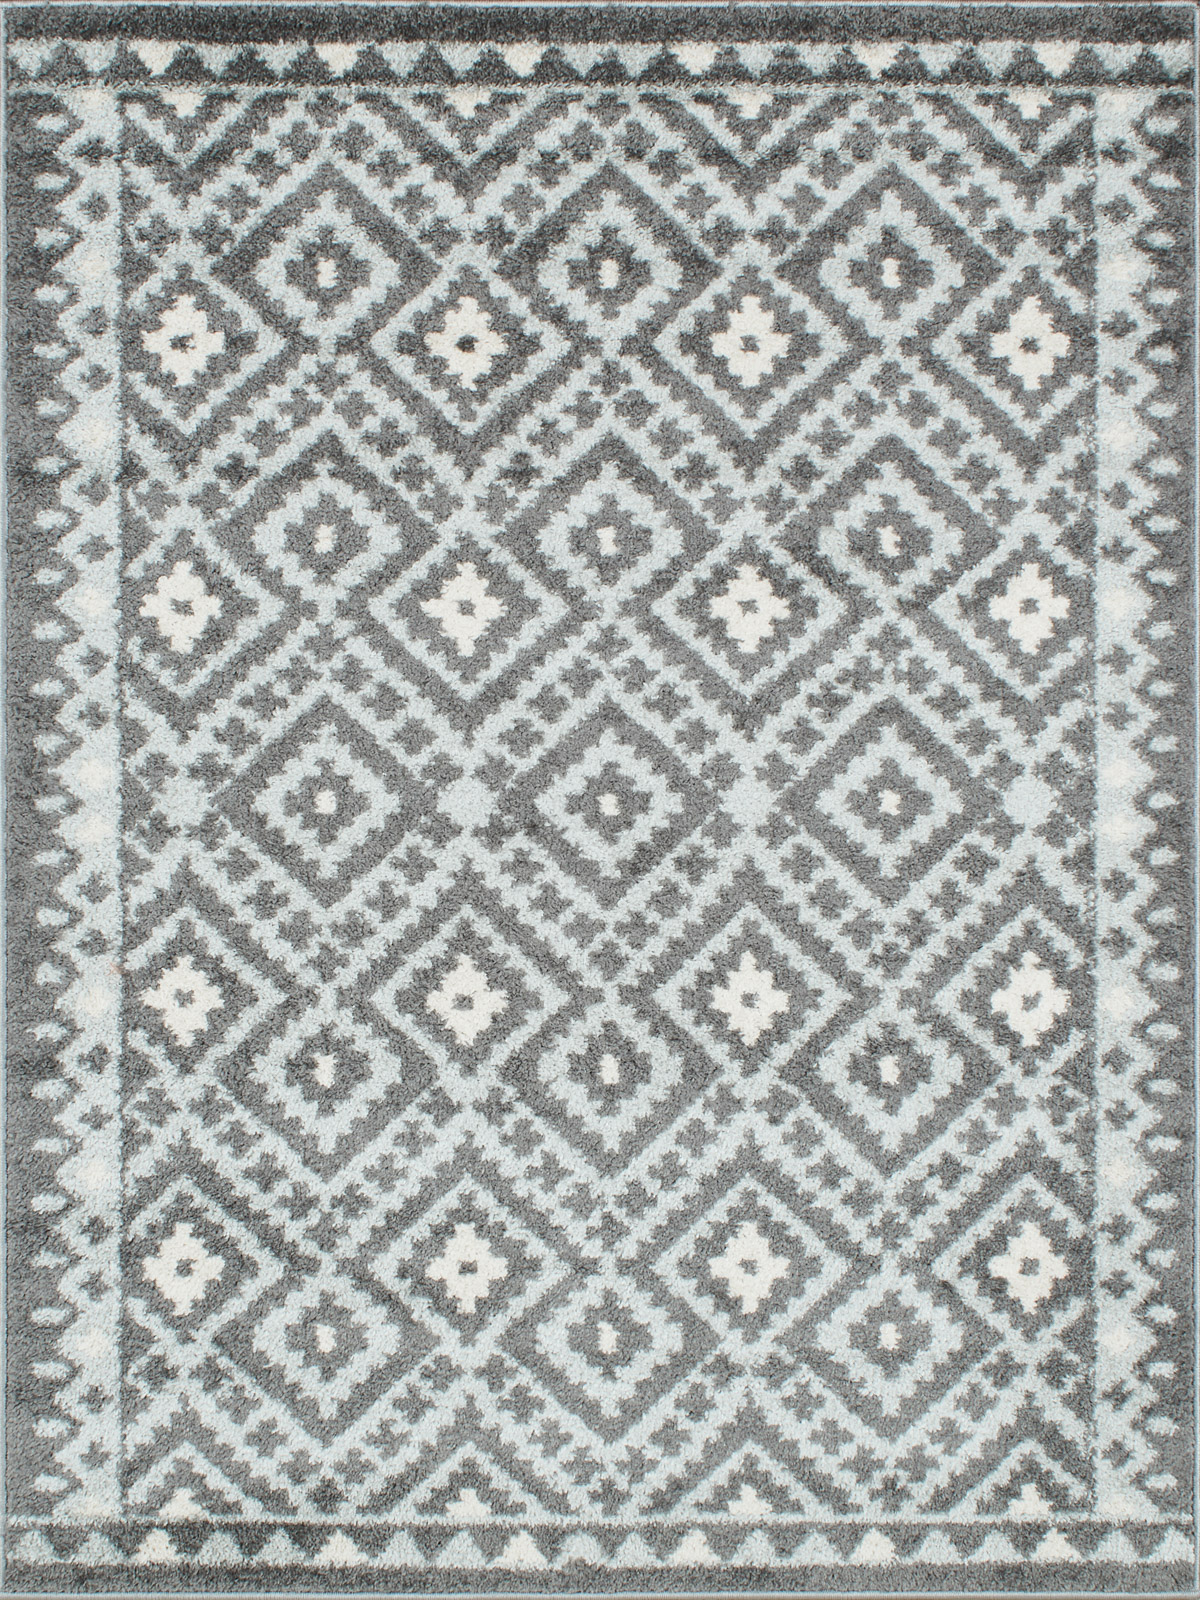 Tapis moderne motif géométrique anthracite - 120x160